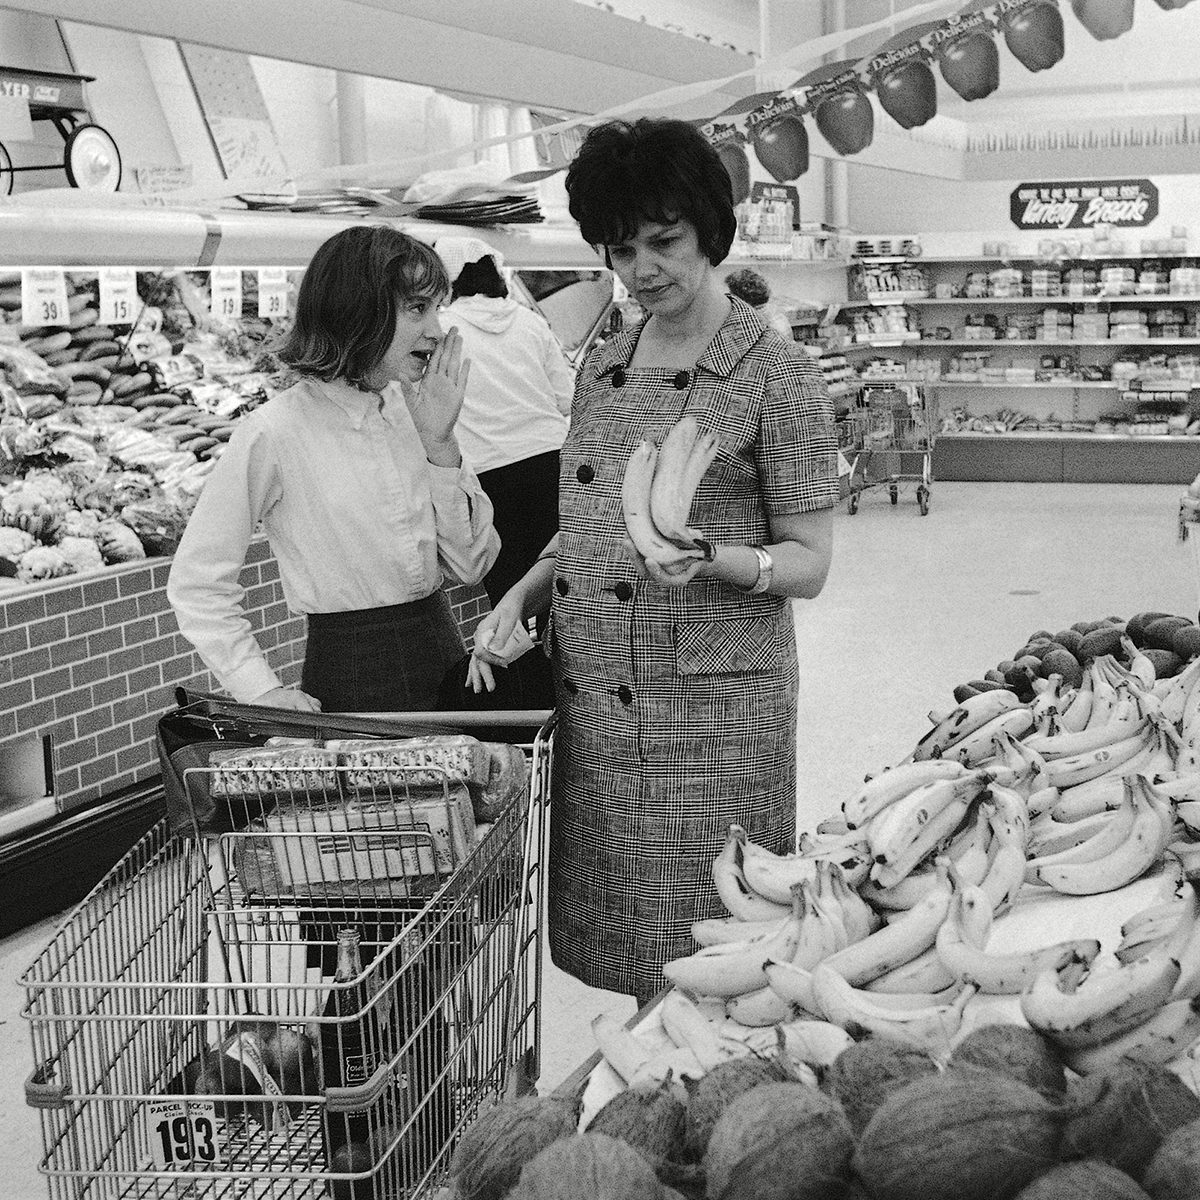 美国休斯敦，双子星座7号飞船飞行员的妻子詹姆斯·a·洛弗尔夫人在德克萨斯州西布鲁克郊区的一家超市购买食品时，向12岁的女儿芭芭拉提出了购买香蕉的建议